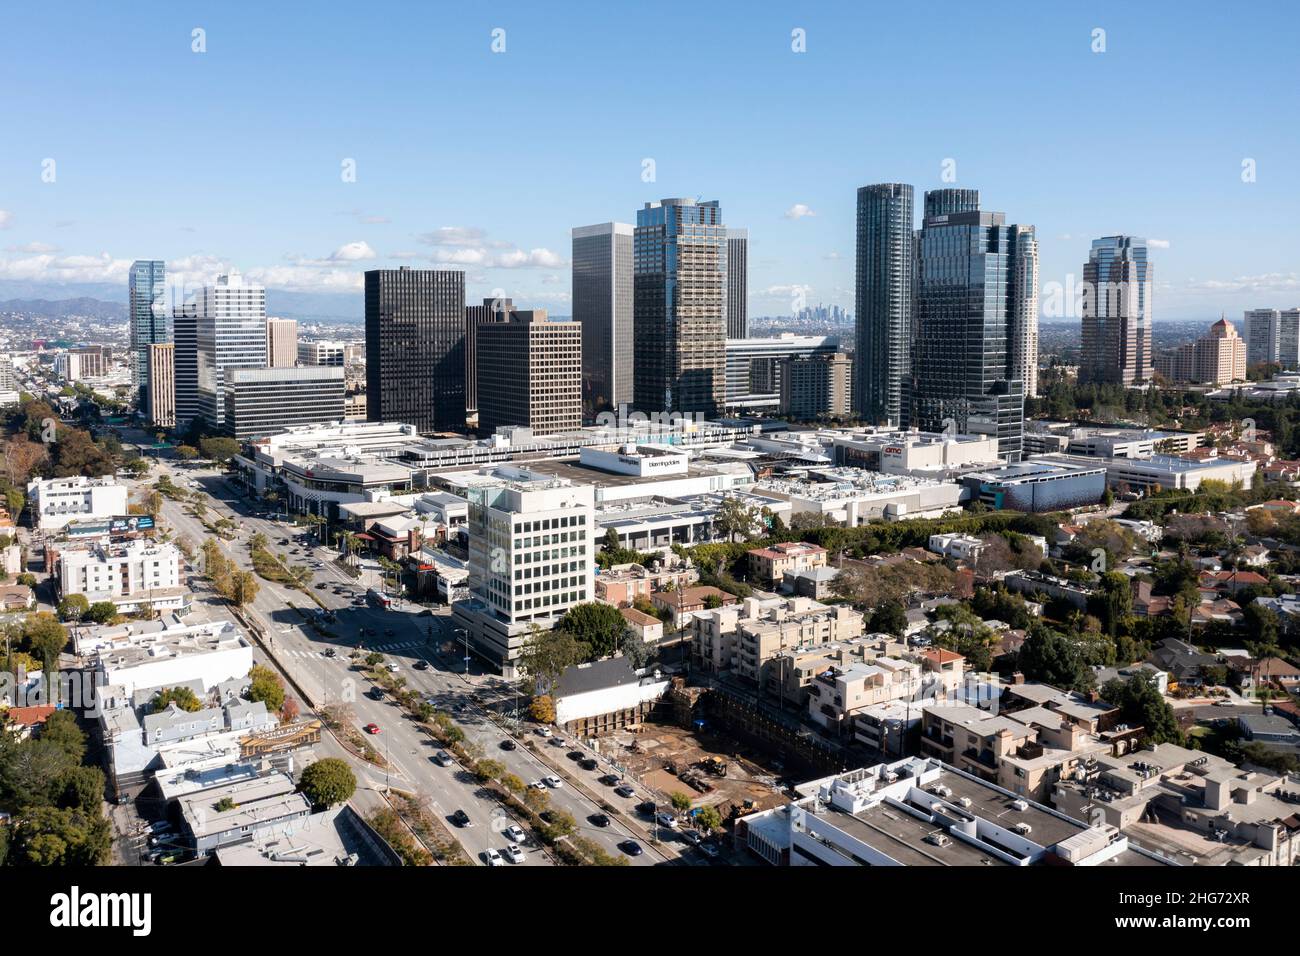 Vue aérienne de Century City par temps clair avec le centre-ville de L.A. visible au loin Banque D'Images